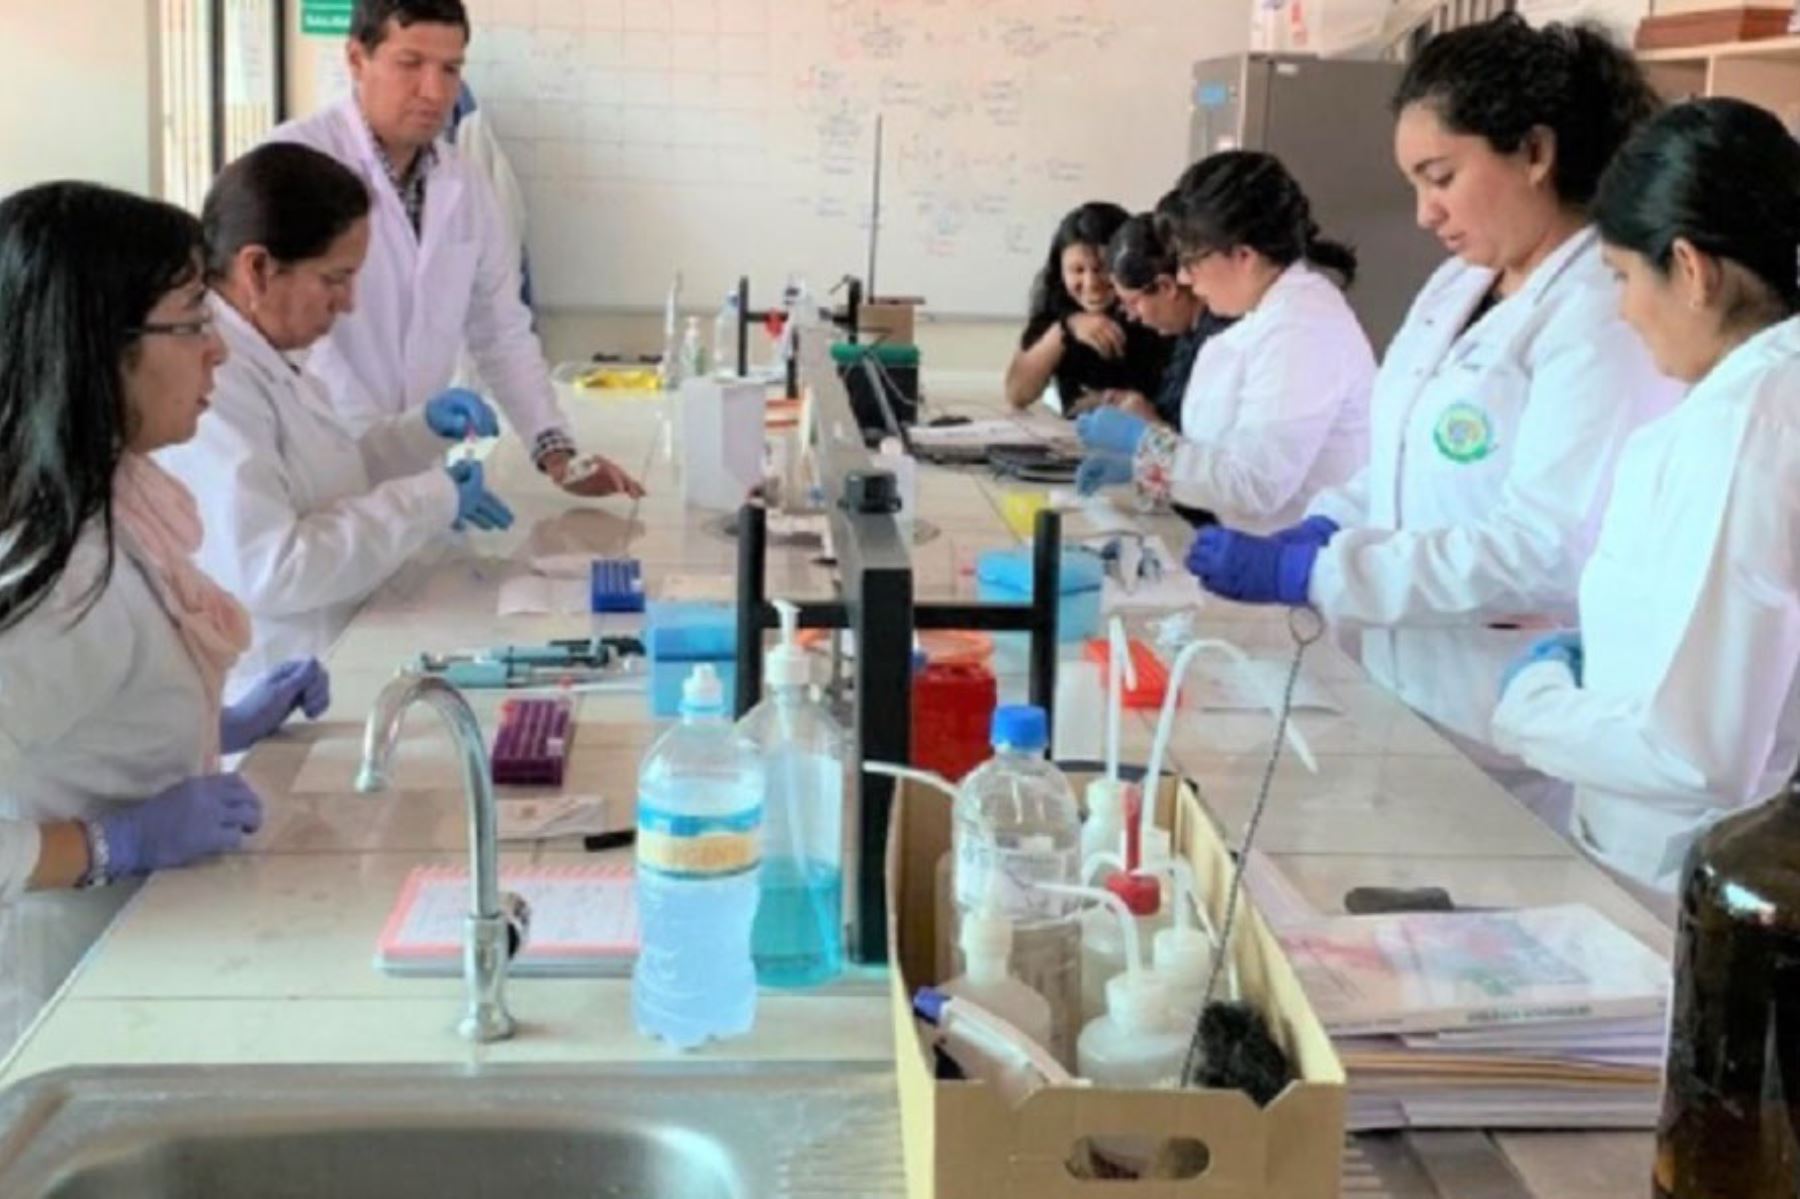 La Universidad Católica de Santa María (UCSM) viene desarrollando el “Programa de Doctorado en Ciencias de la Salud”, que busca contribuir con el estudio de tres importantes líneas de investigación como el cáncer, los microbiomas y la salud pública en el Perú.